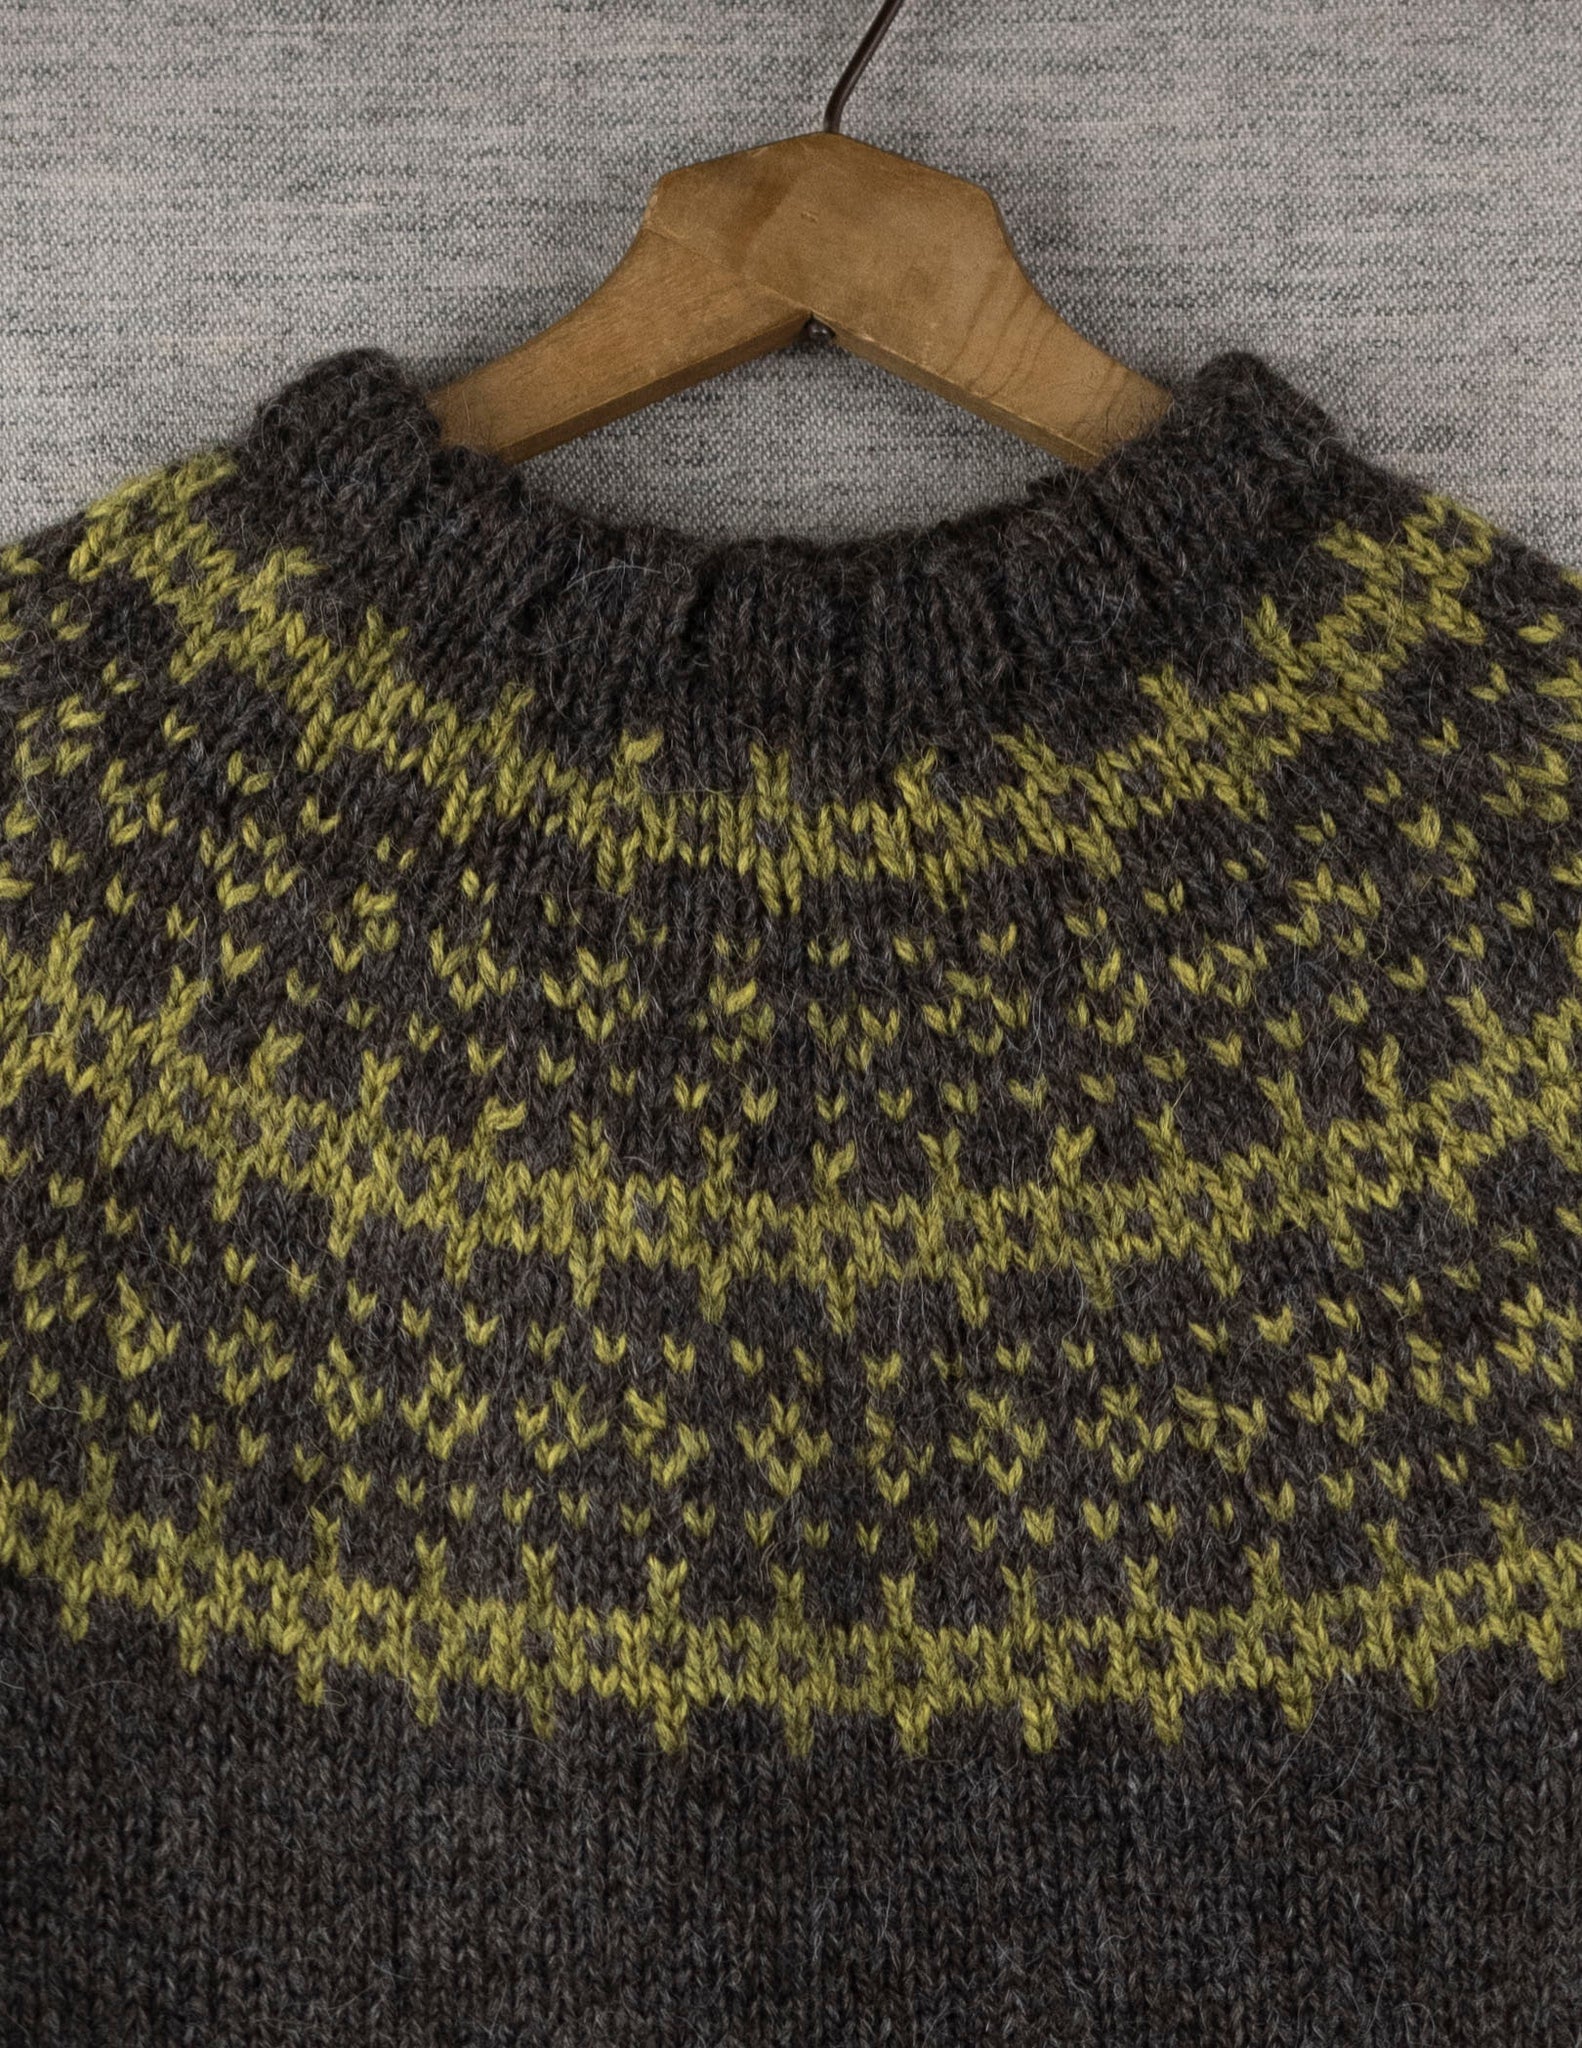 SALTY GRAINS, sweater knitting kit in Full Storm